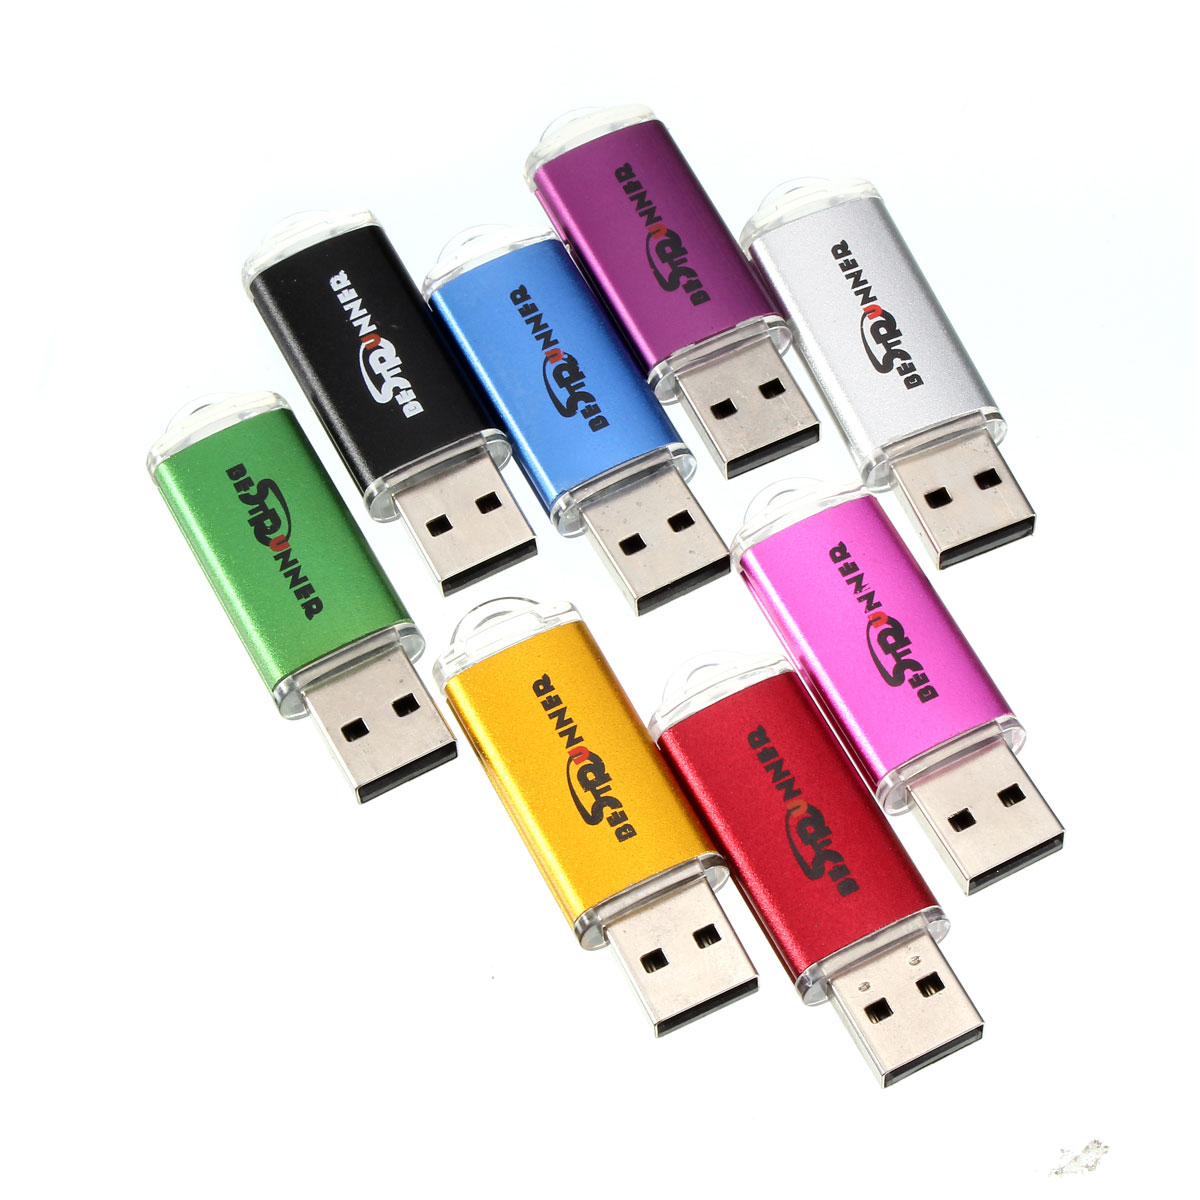 Bestrunner 32GB USB 2.0 Flash Drive Candy Color Memory U Disk 20